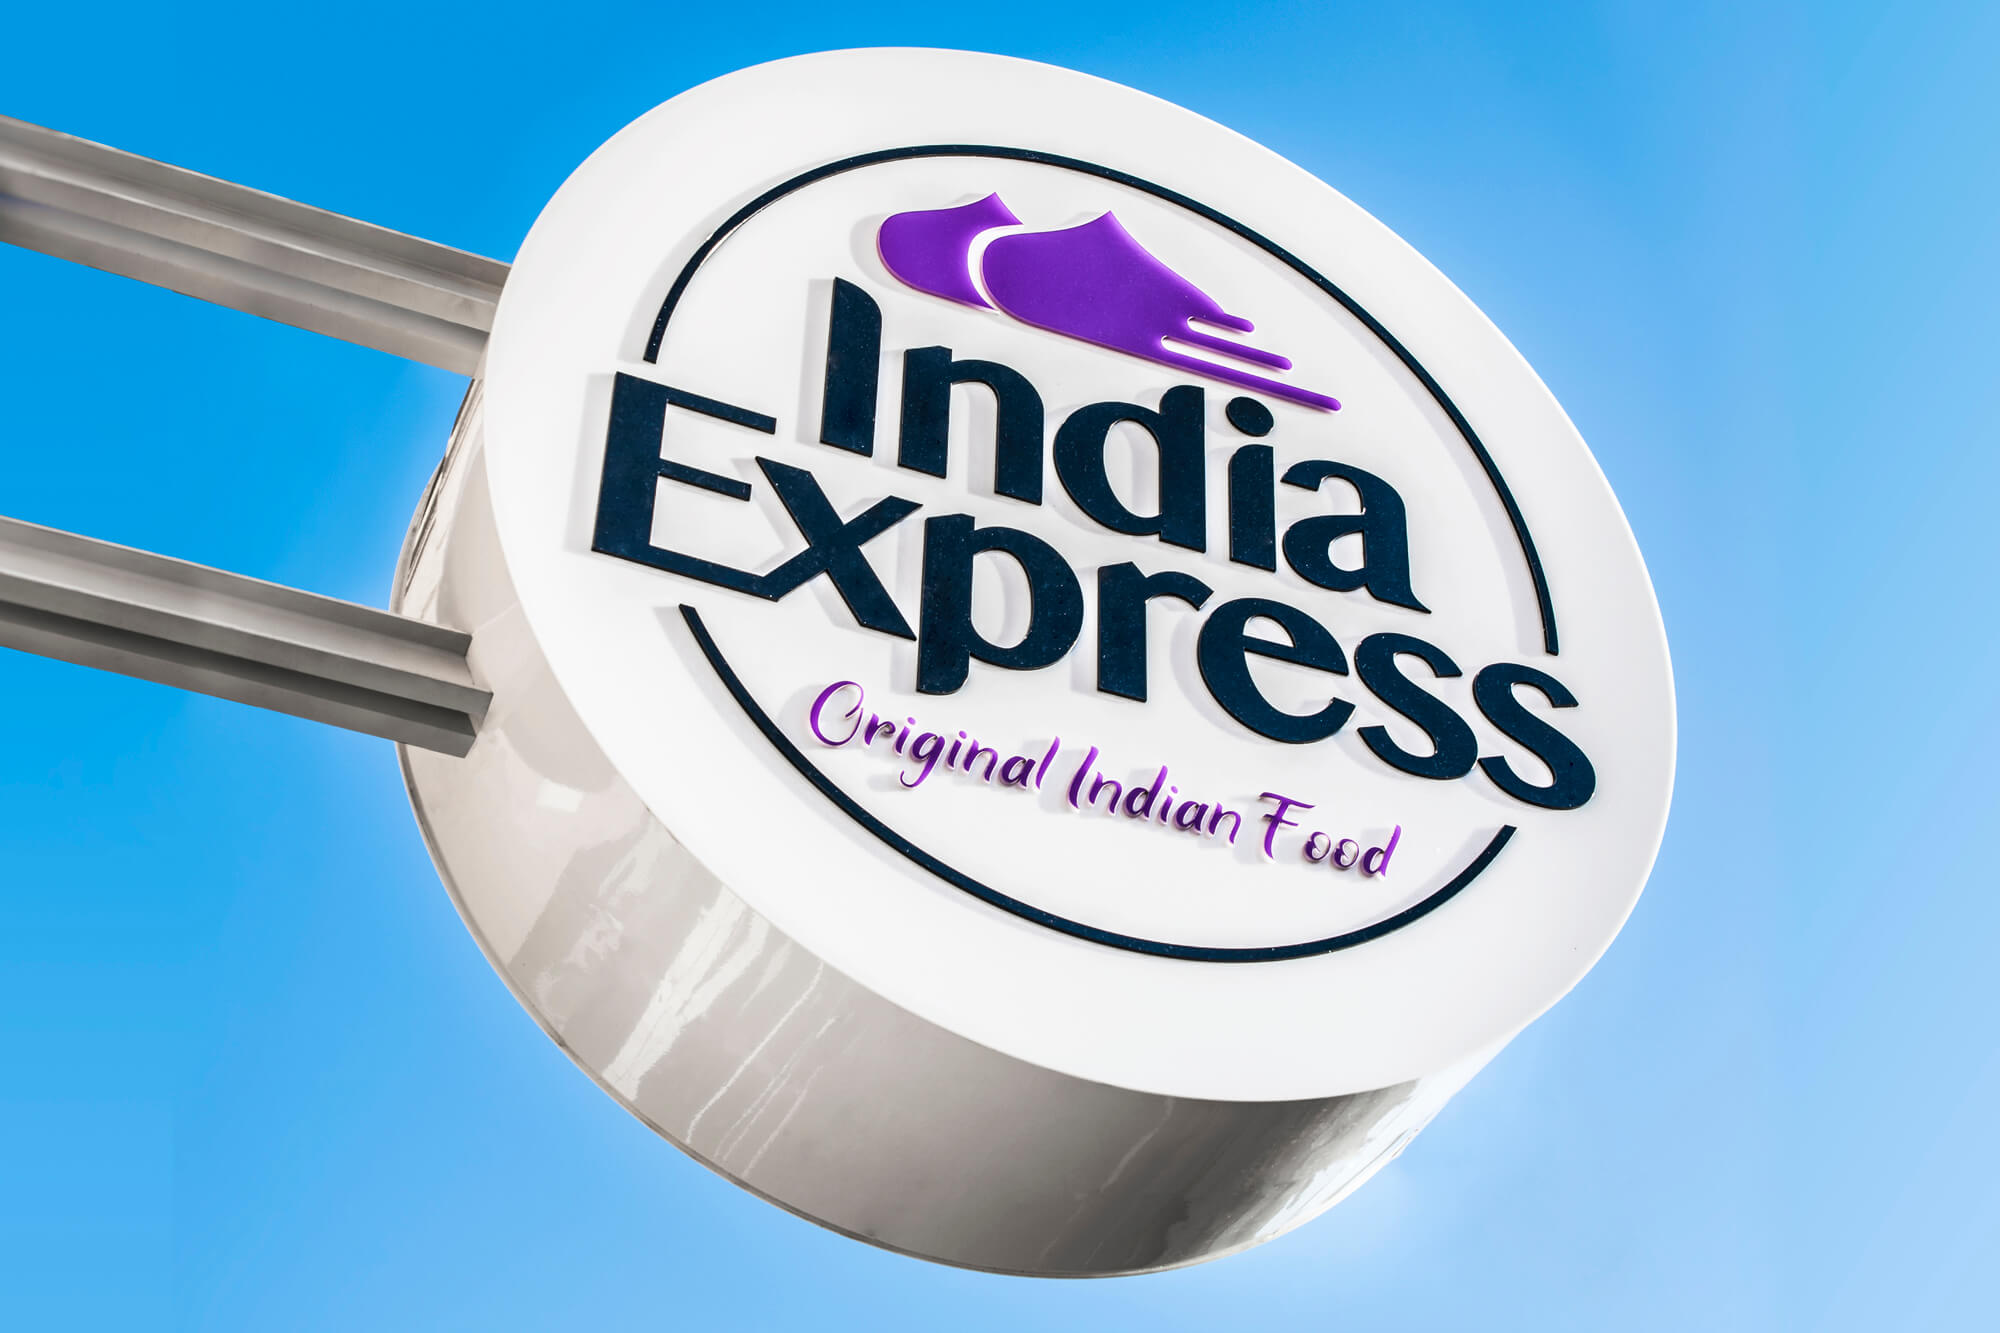 Indien-Express - India Express - Firmenlogo und Werbesemaphore hängen neben dem Eingang